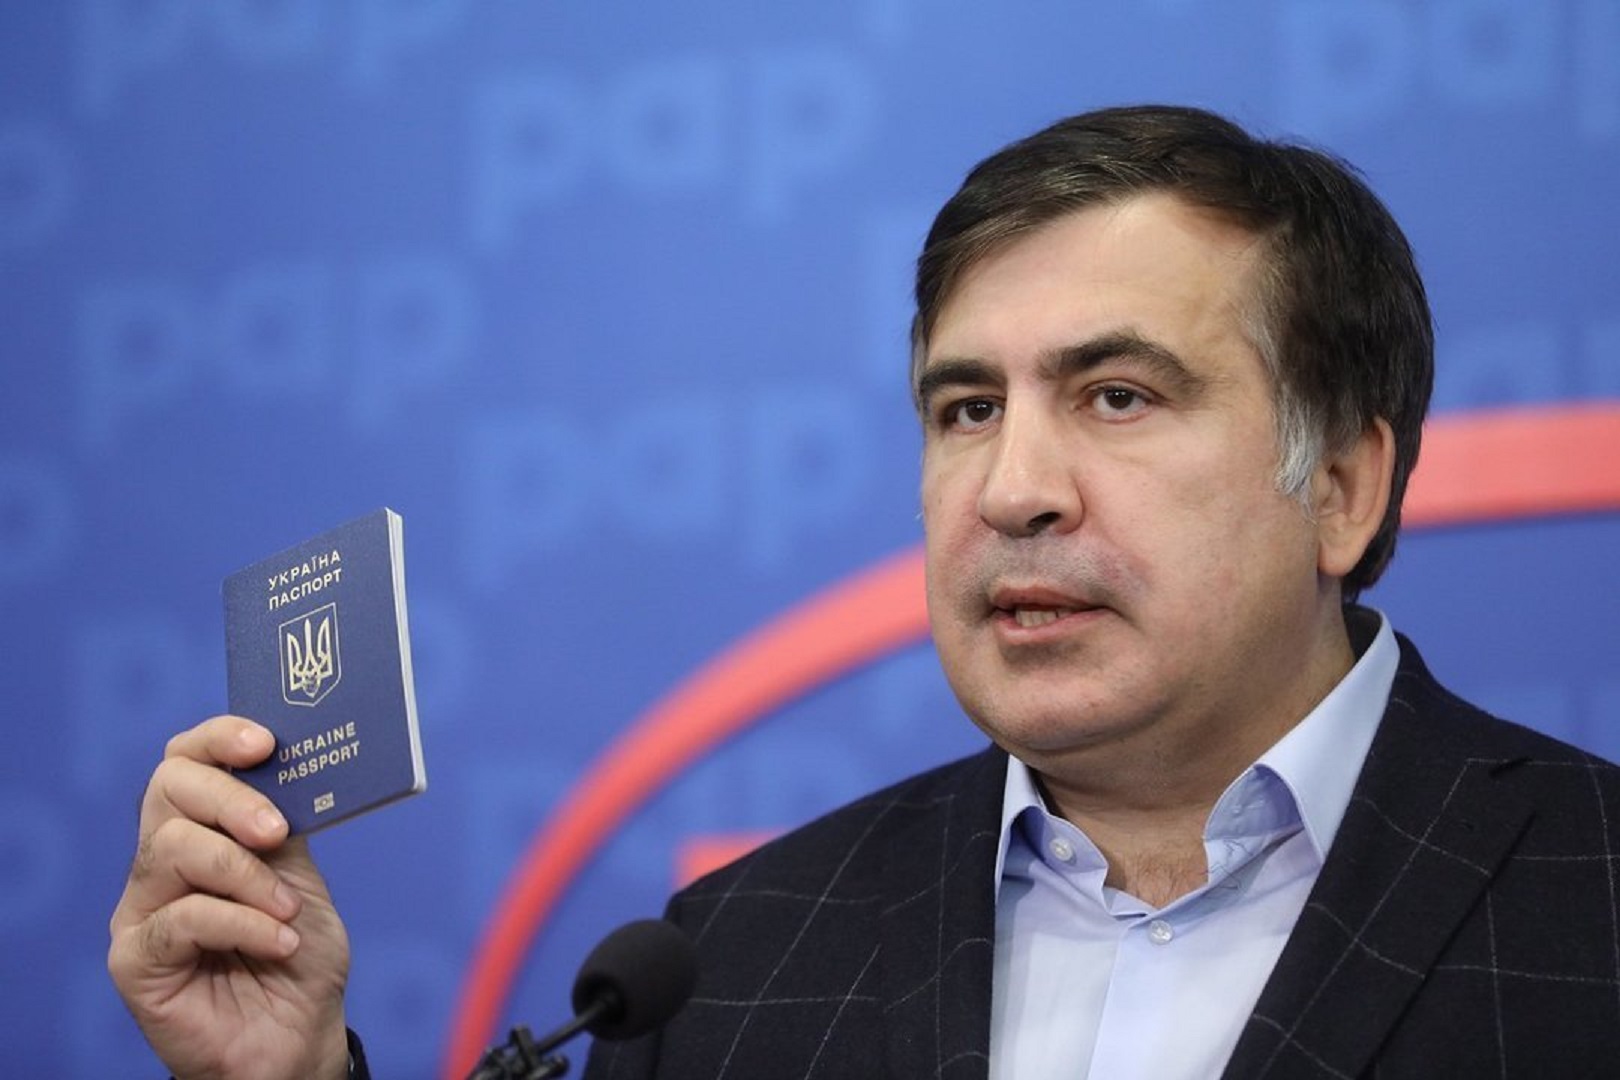 Саакшвили сможет принять участие в парламентских выборах. На правах избирателя - фото 1